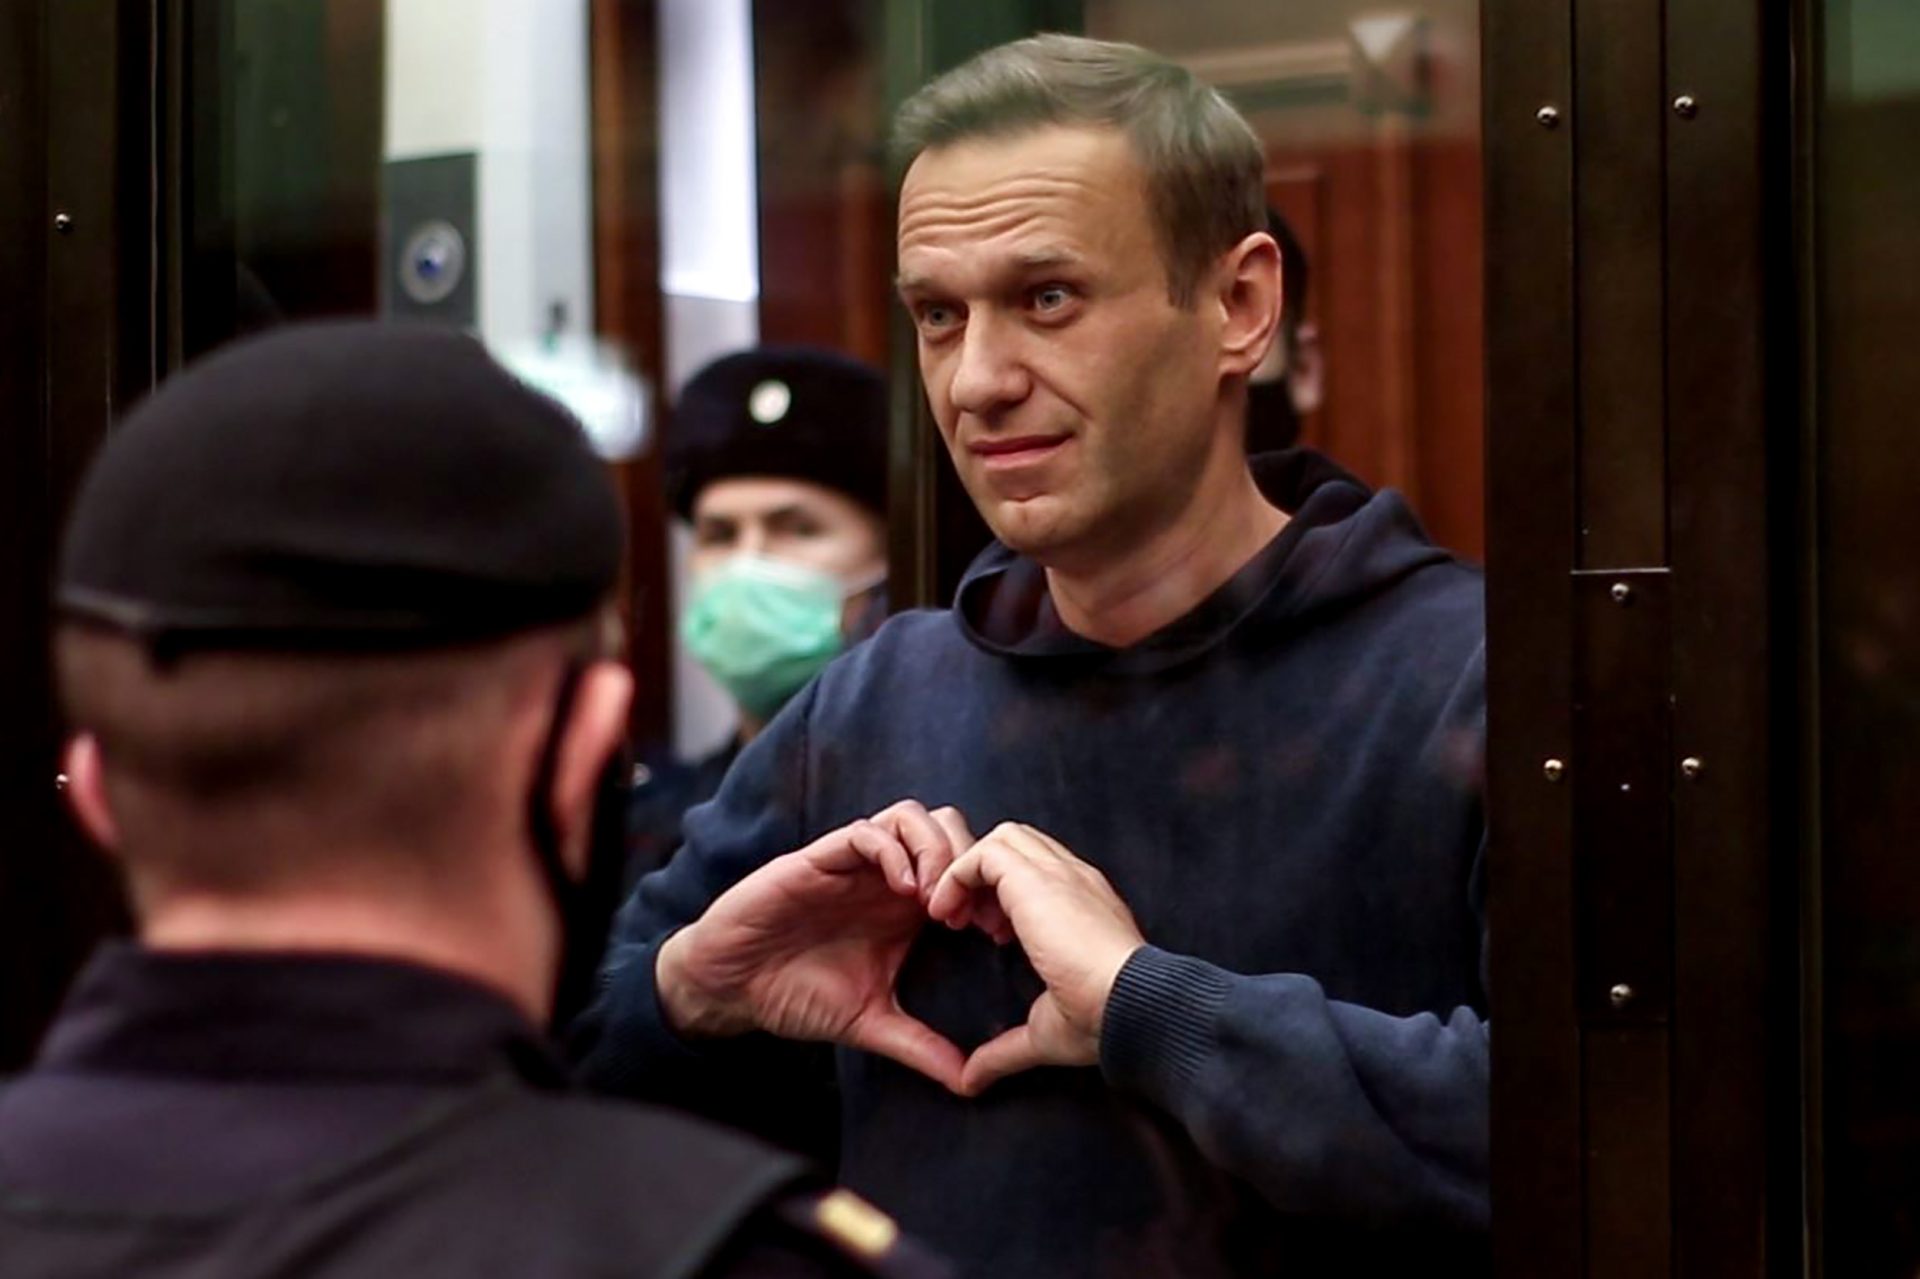 Rússia &#8220;sem intenção de levar em consideração&#8221; declarações de outros países sobre Navalny